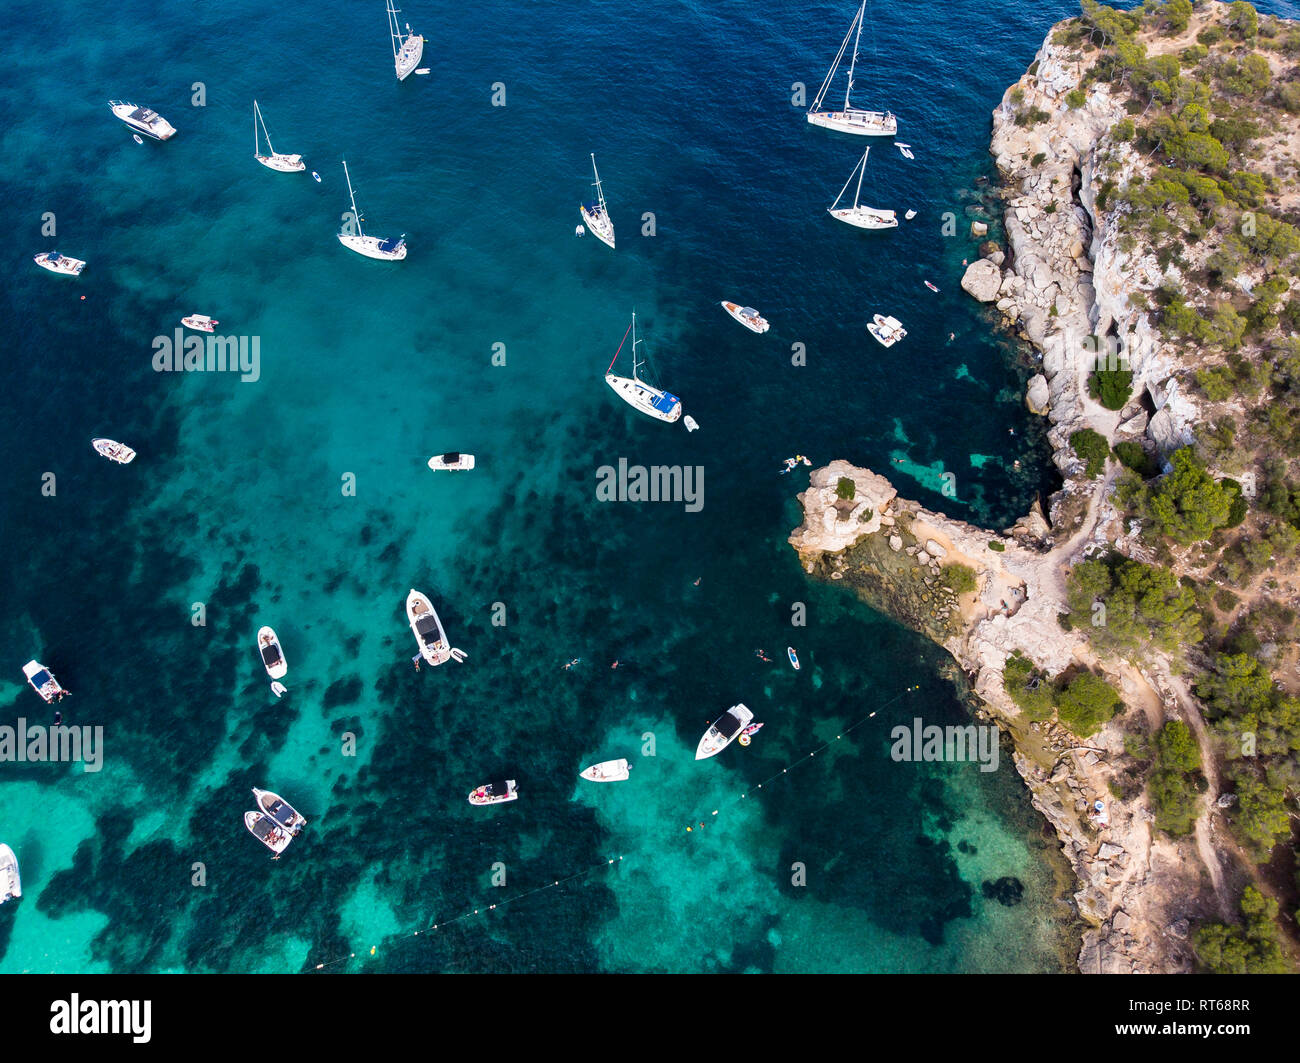 Spain, Mallorca, Palma de Mallorca, Aerial view of Calvia region, El Toro, Portals Vells Stock Photo